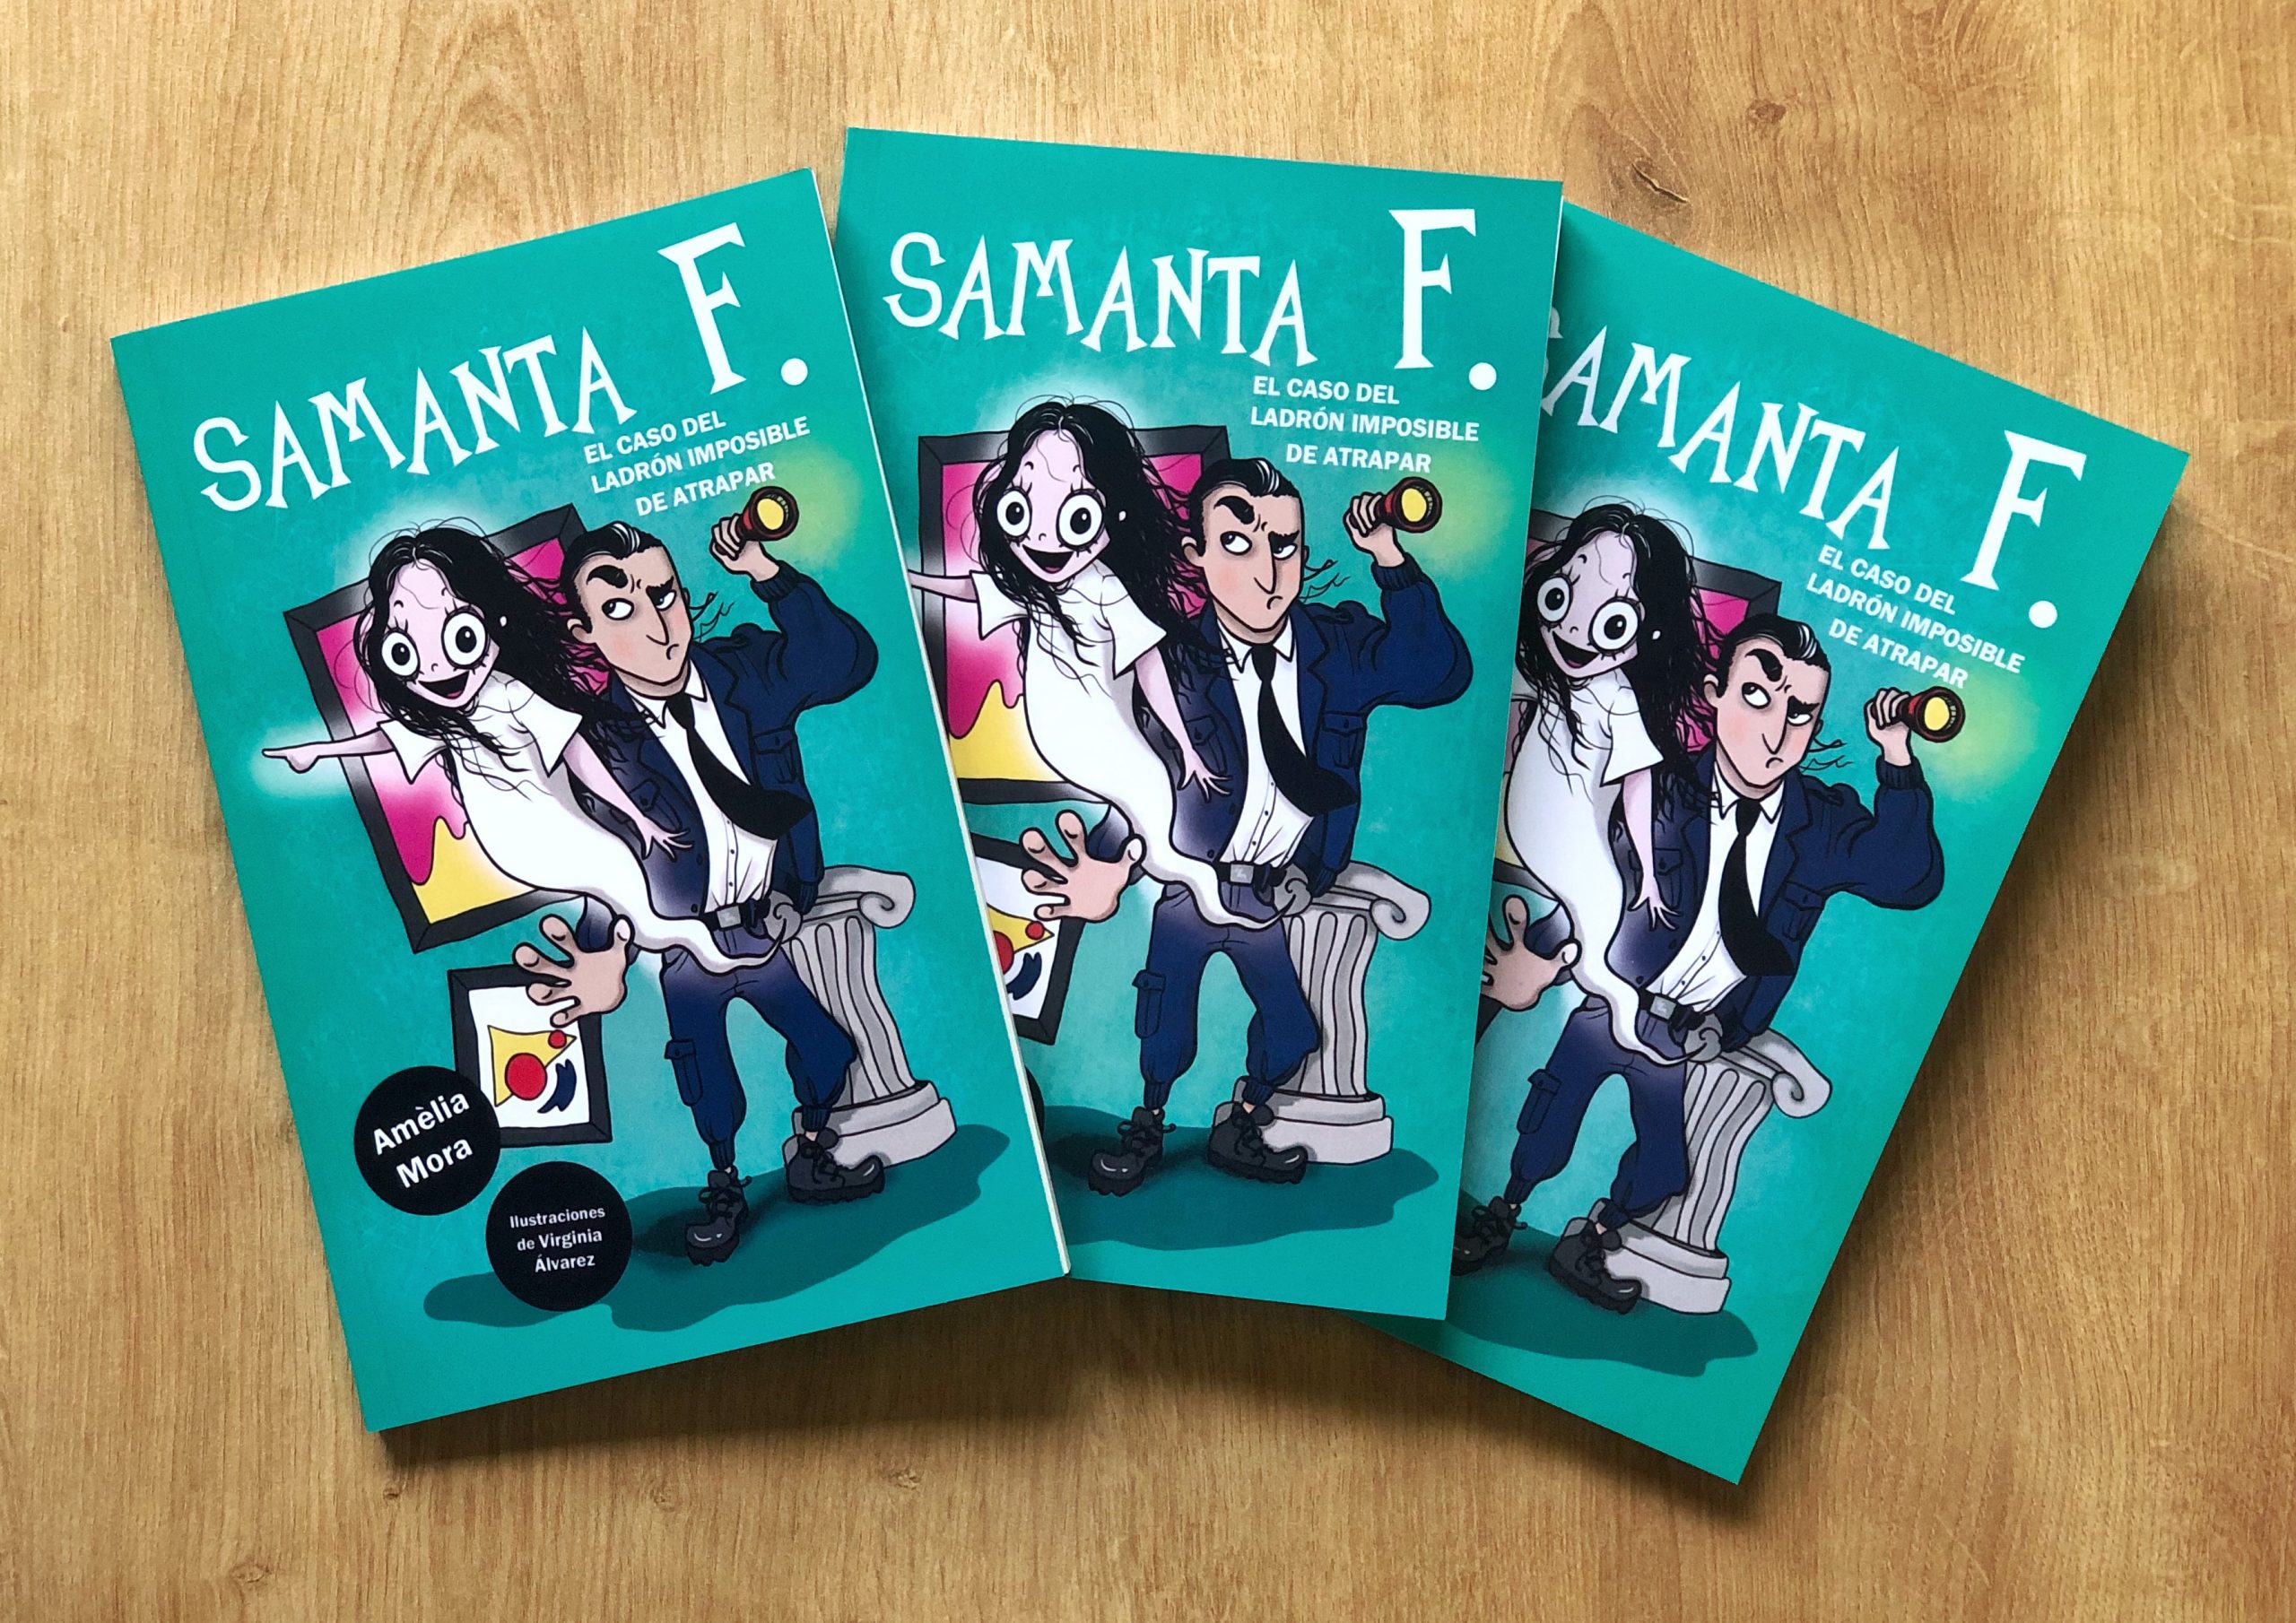 Los tres ejemplares sorteados de "Samanta F.: El caso del ladrón imposible de atrapar"